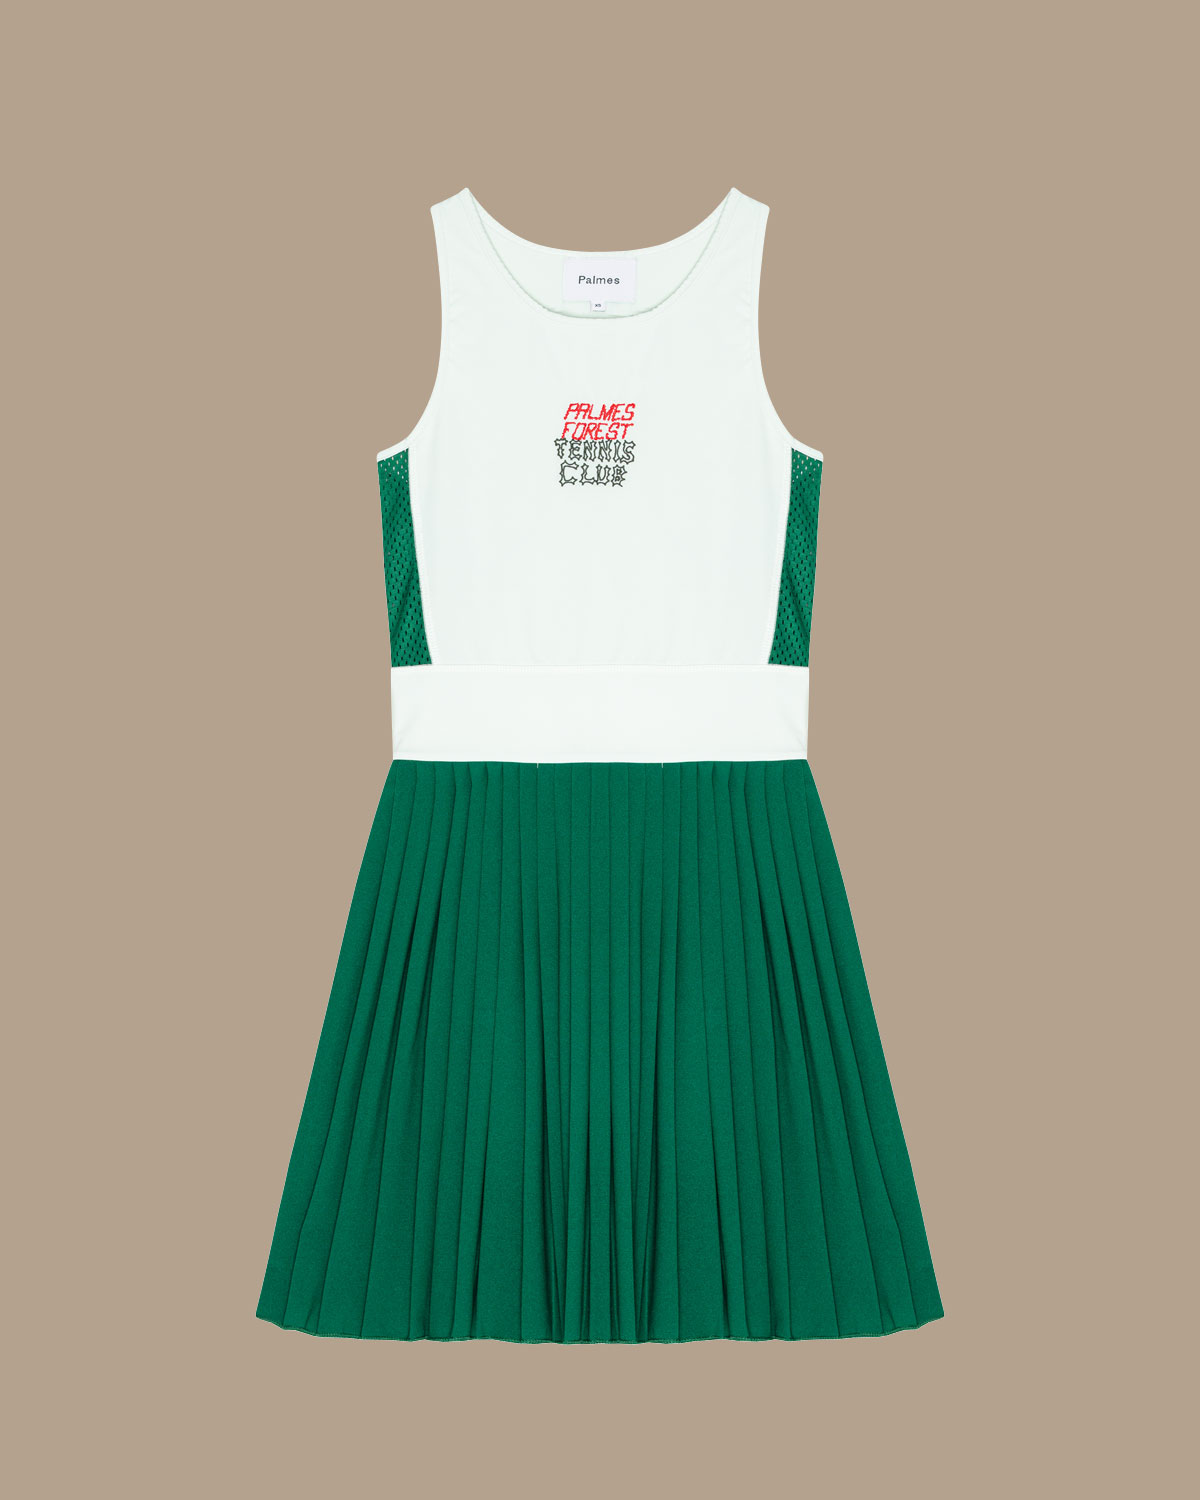 10+ Green Tennis Dress